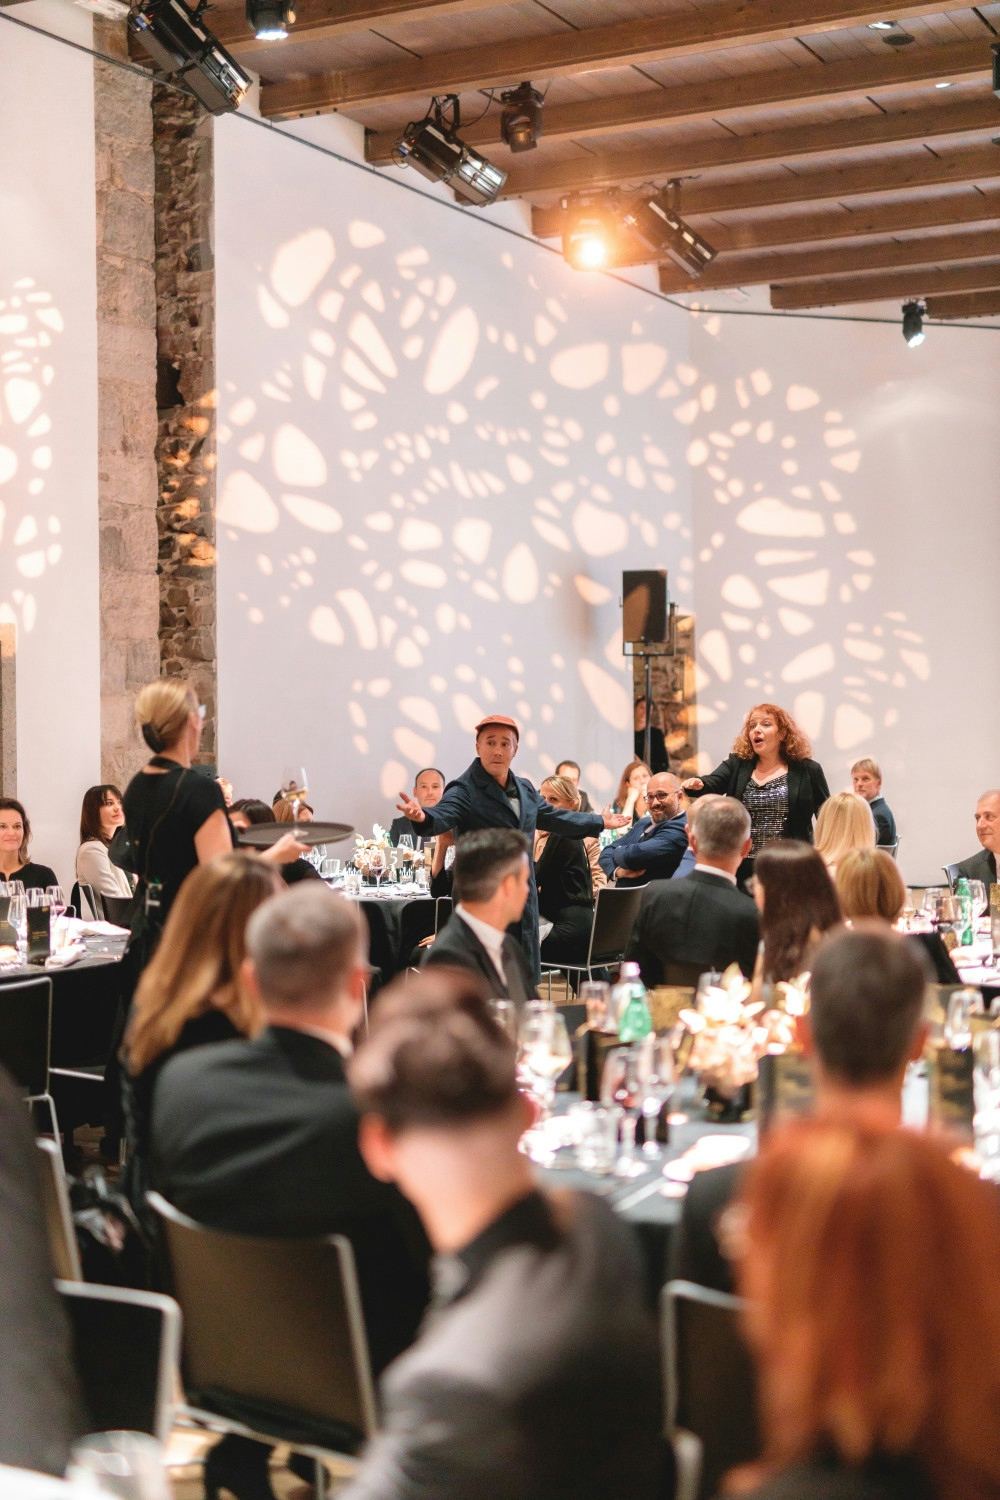 Organizacija predstavitve prvih Kongresnih ambasadork in ambasadorjev Slovenije za leto 2019 na Ljubljanskem gradu. Organizacija prireditve Paideia Events.